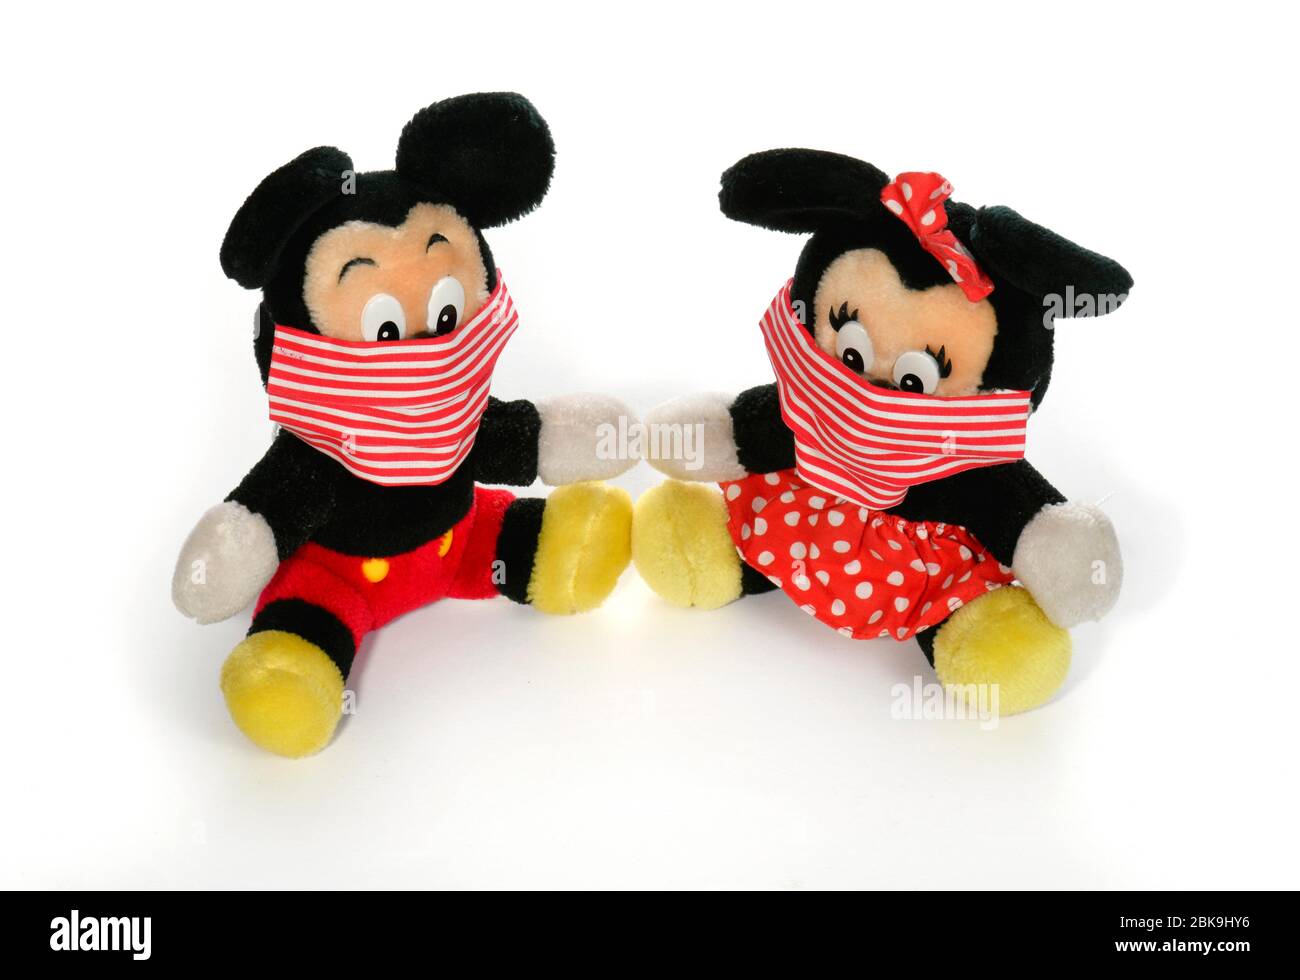 Immagine simbolo, società di intrattenimento Disney in crisi, Micky e Minnie con maschere facciali, toccandosi l'un l'altro, Corona crisi, Germania Foto Stock